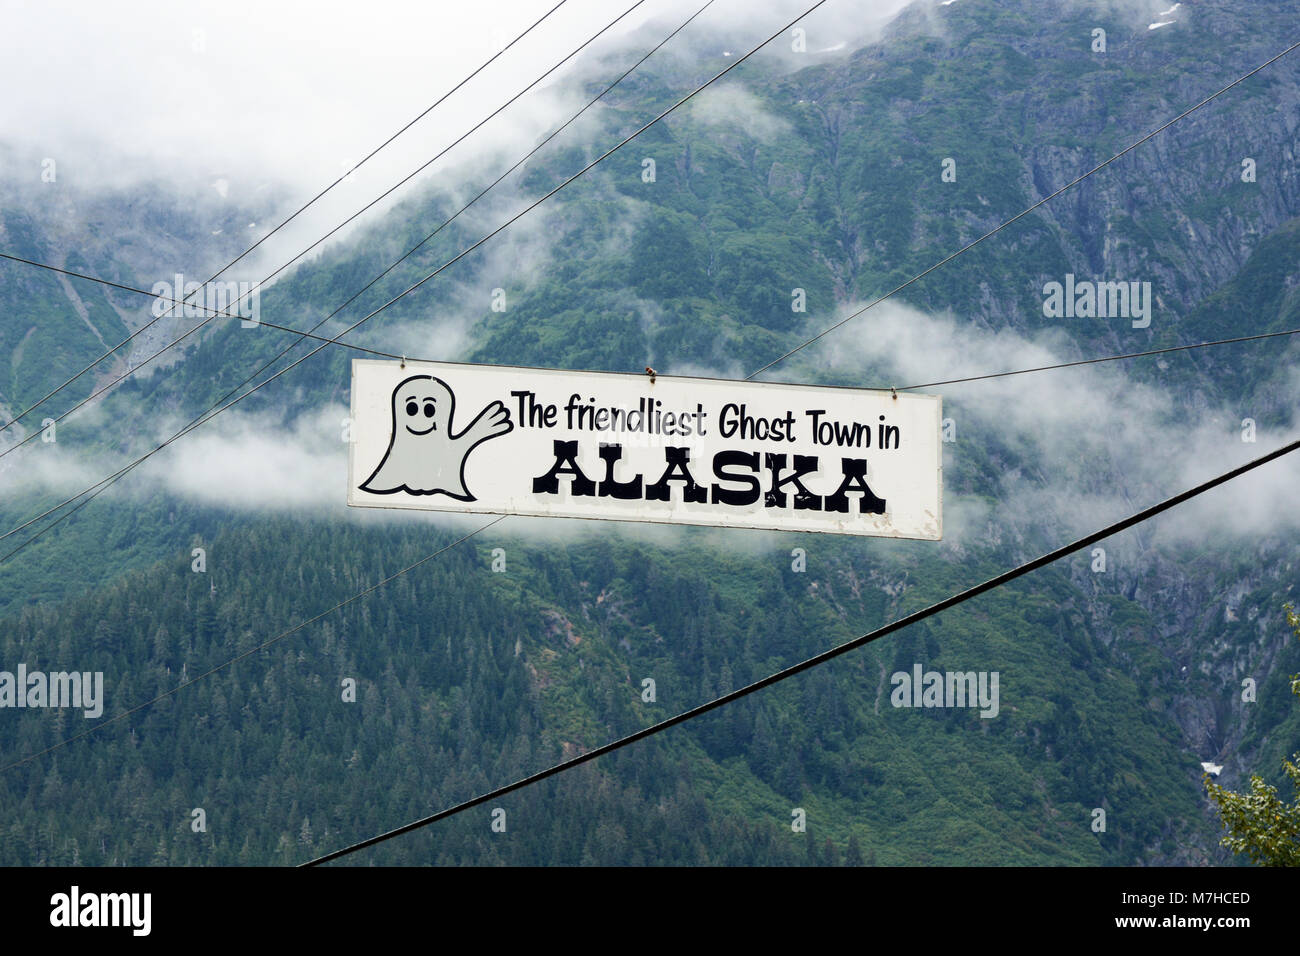 Ein willkommenes Zeichen hängt über der Straße Eingang zu der alten Minenstadt Hyder, Alaska, USA, über die Grenze mit Stewart, British Columbia, Kanada. Stockfoto